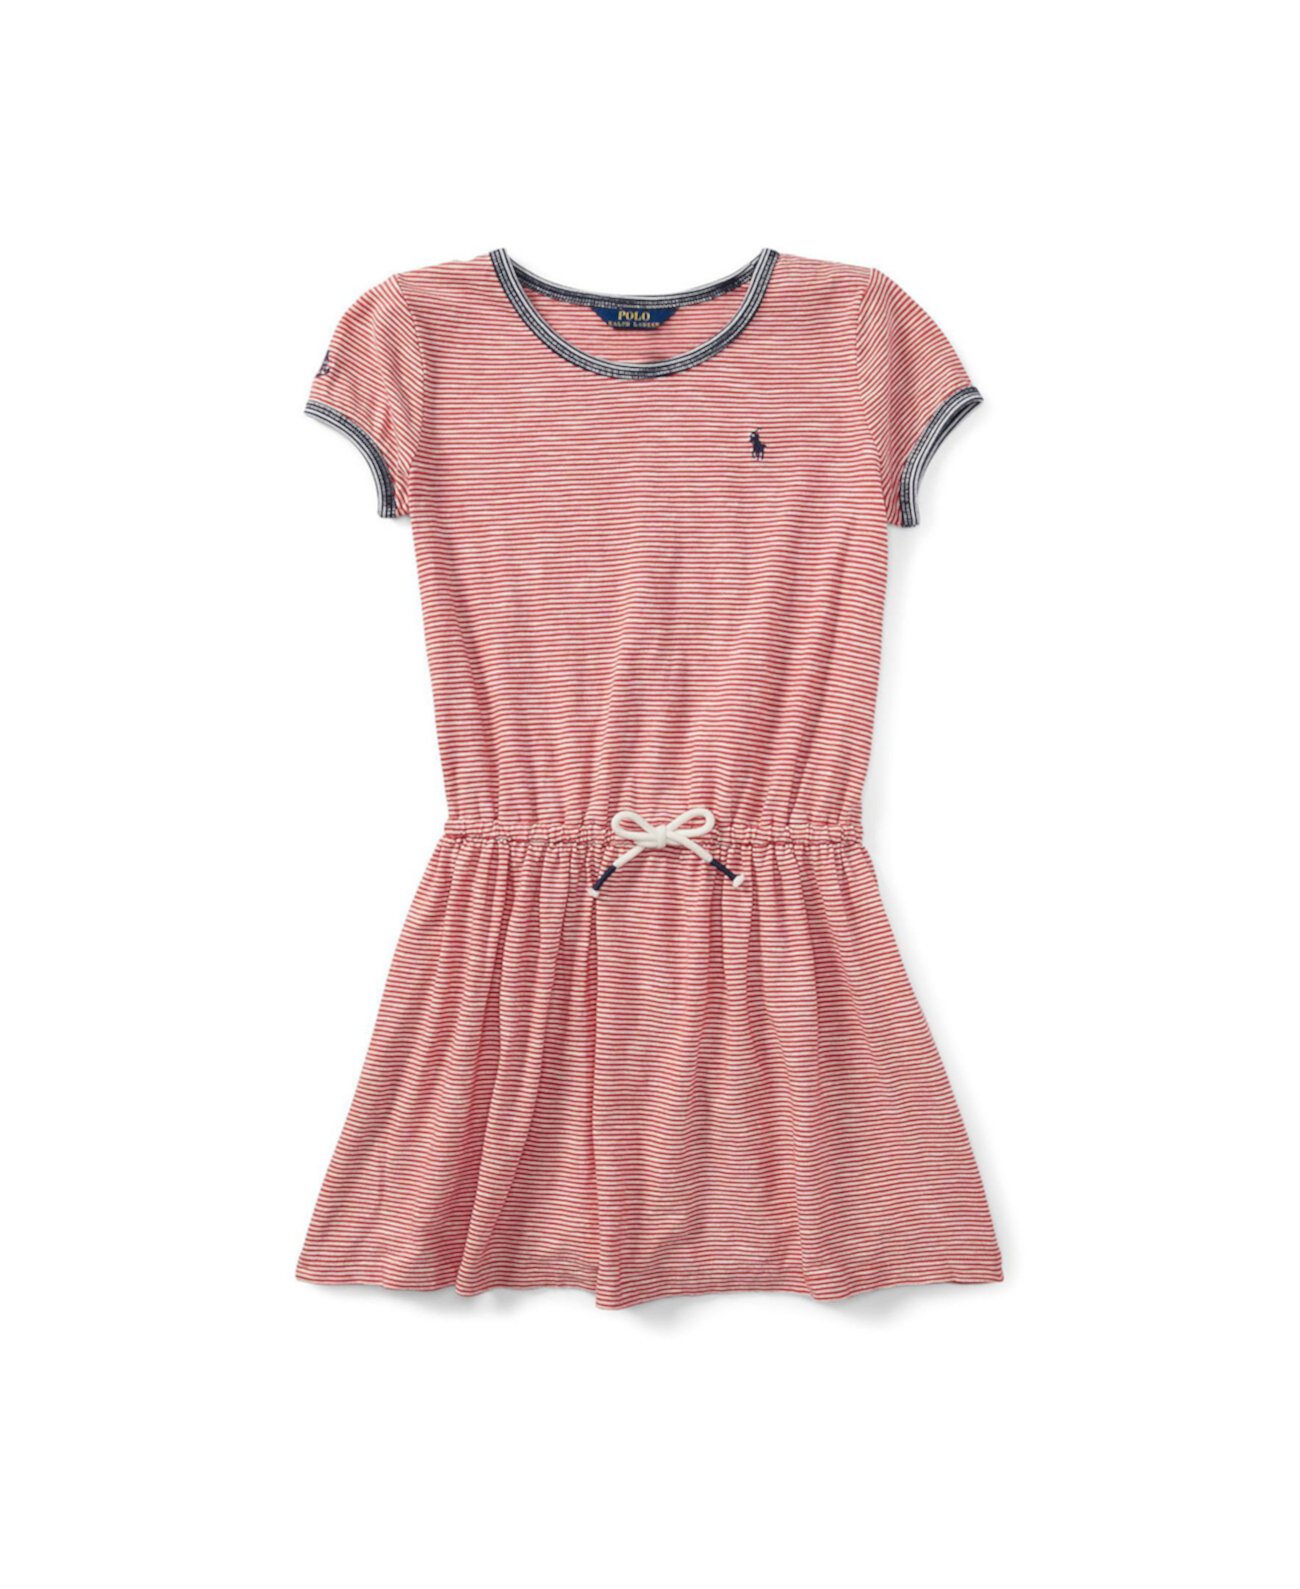 Полосатое платье-футболка из джерси для больших девочек Ralph Lauren